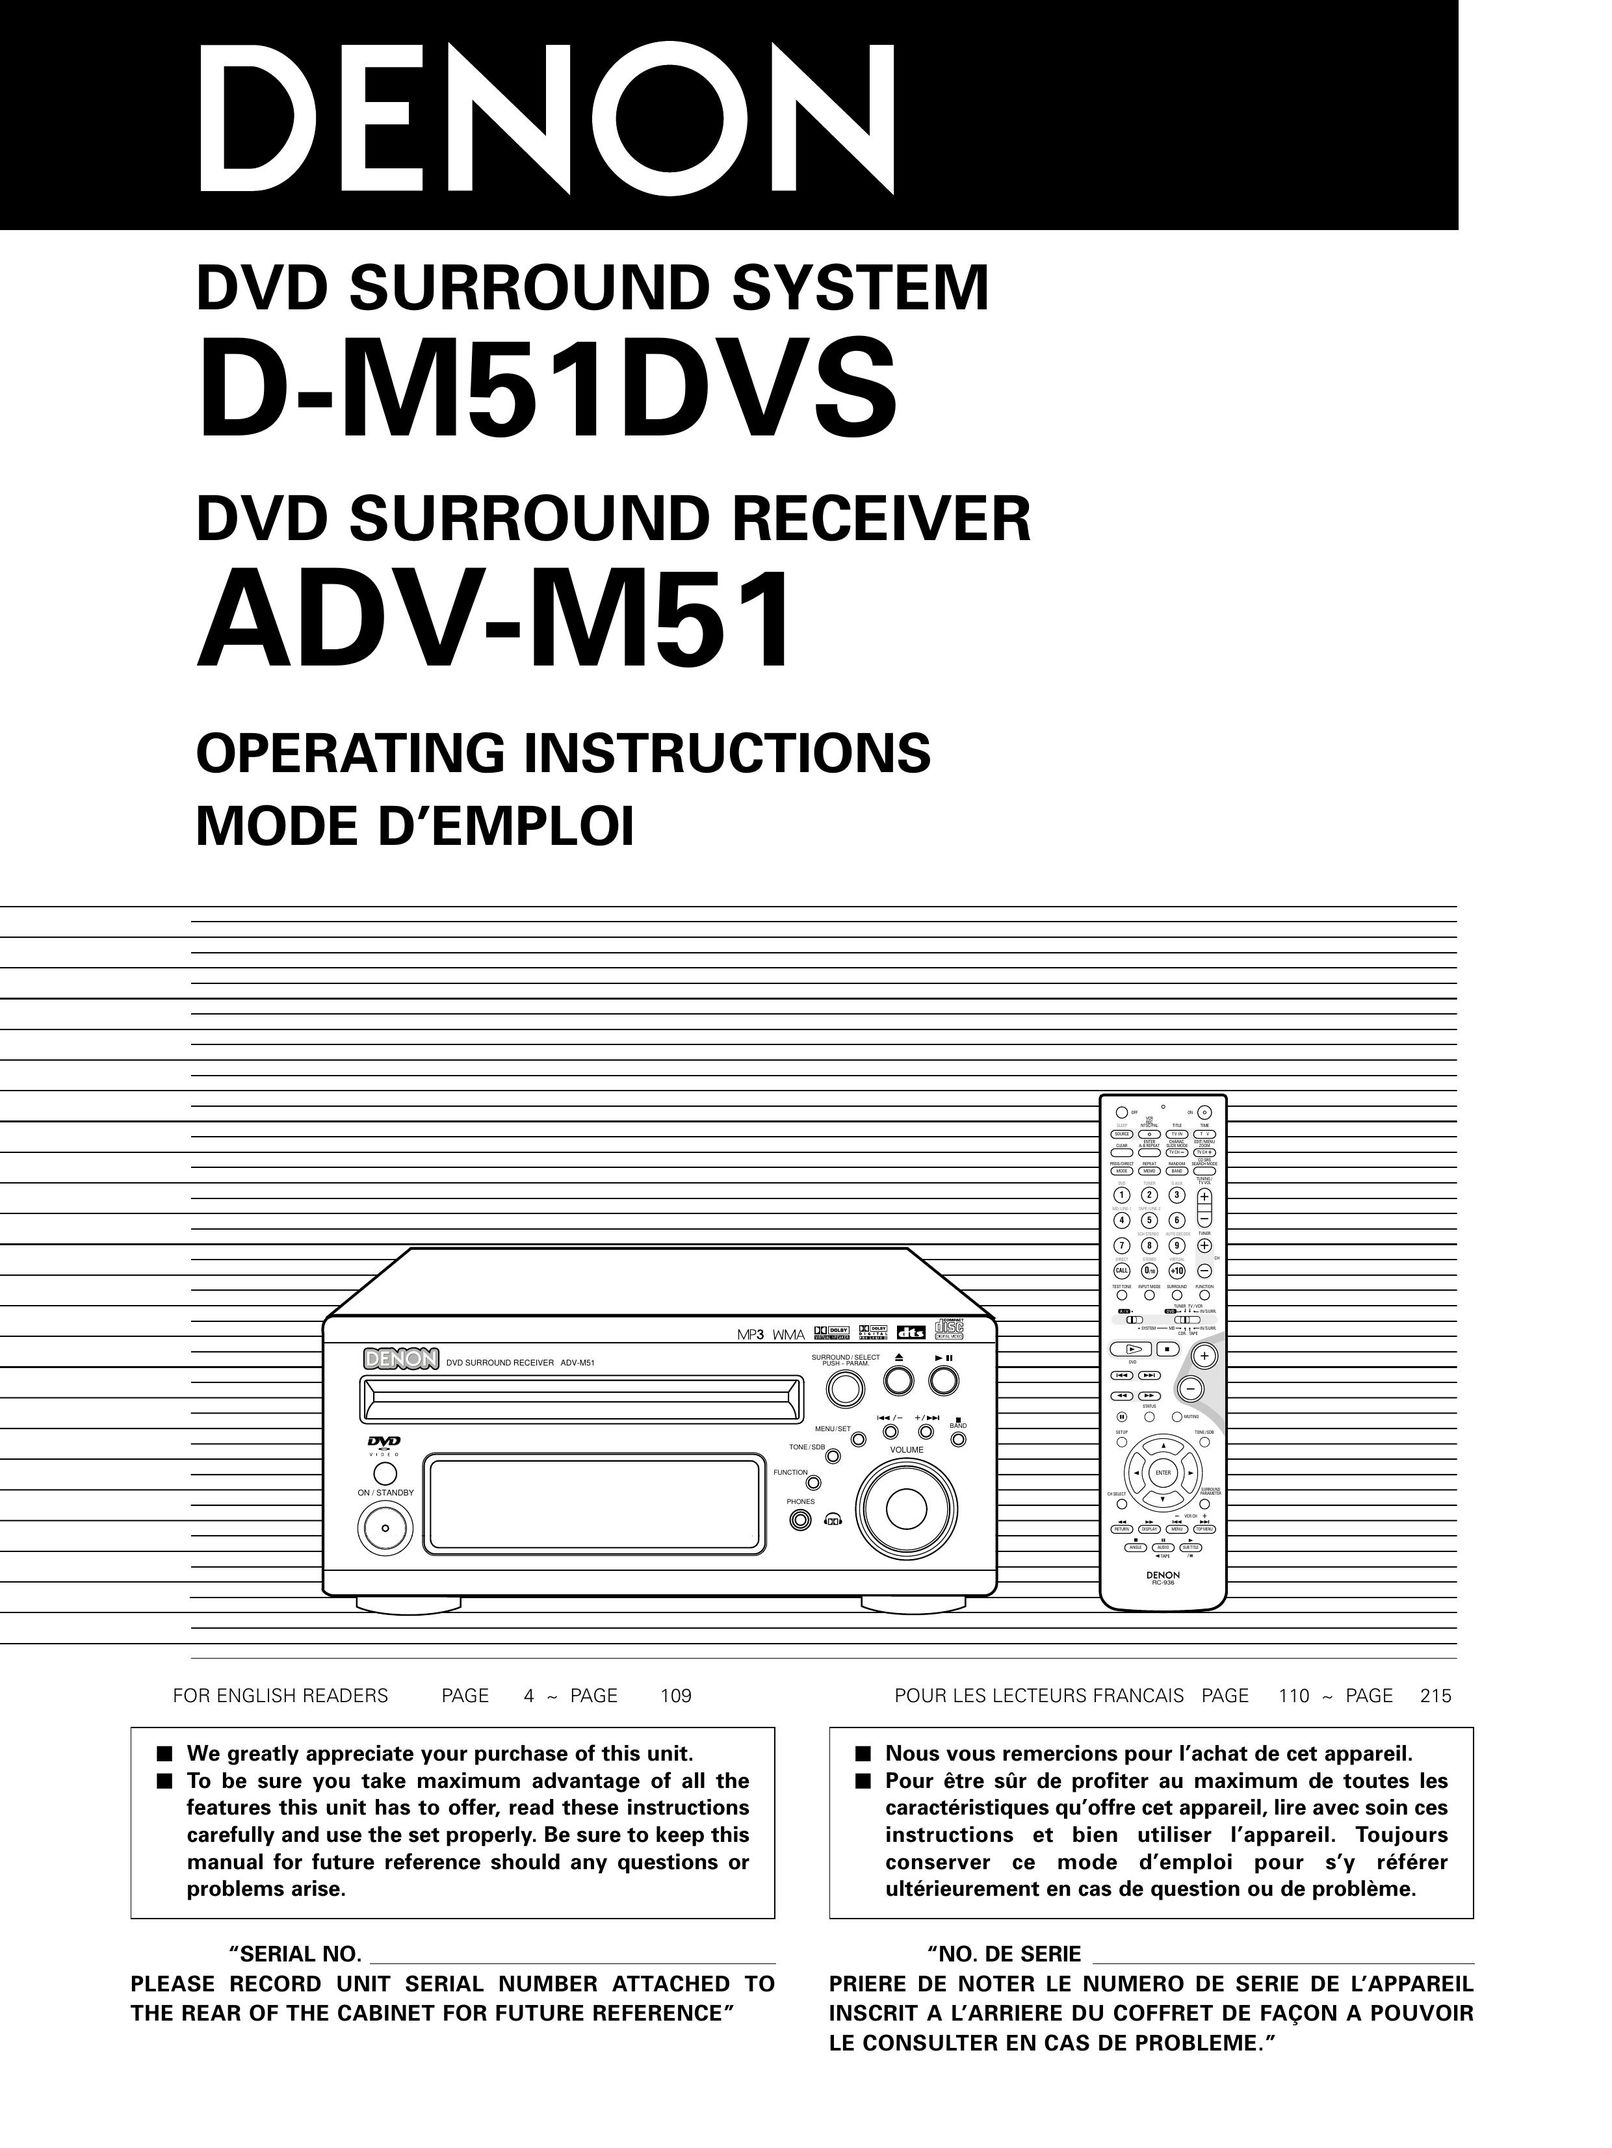 Denon D-M51DVS, ADVM51 Speaker System User Manual